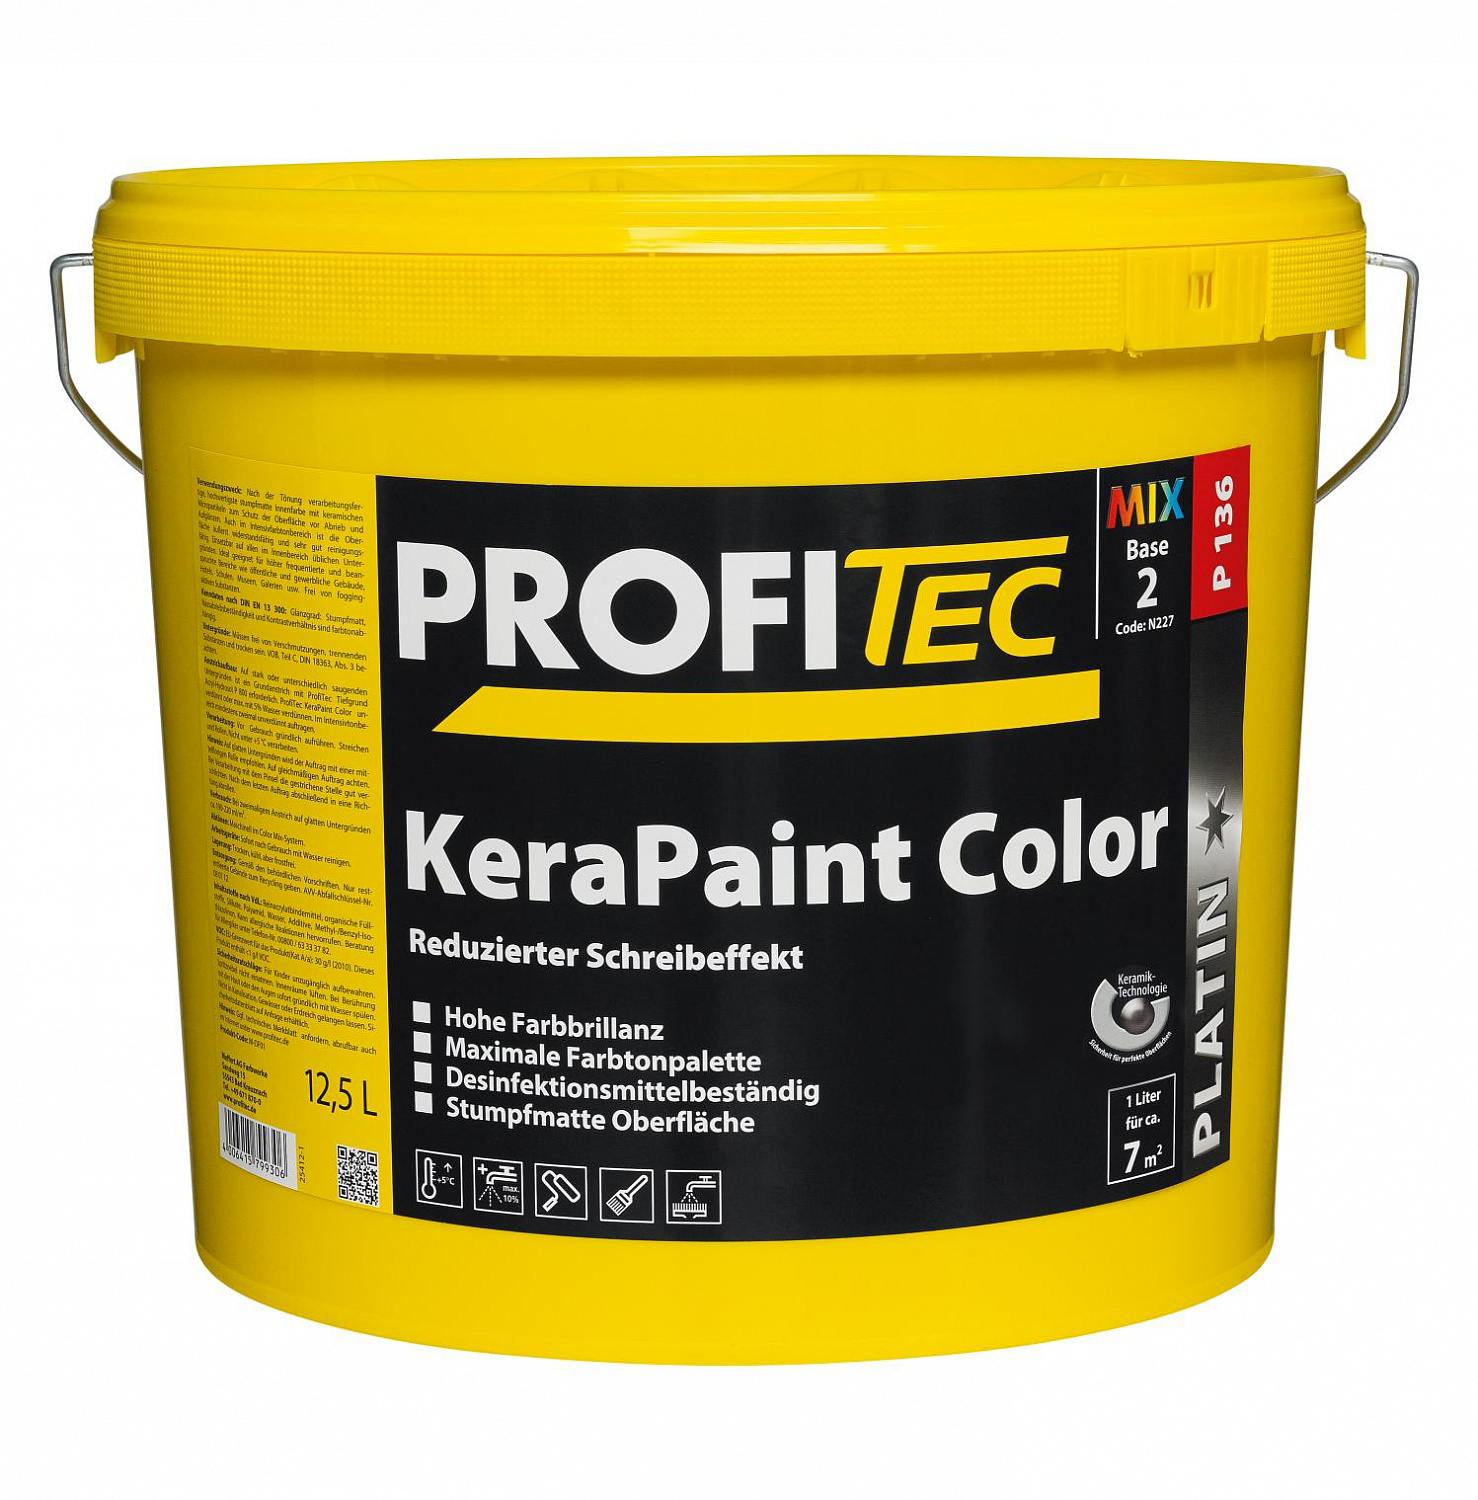 Купить profi tec p 136 kerapaint color - 1 класс влажного истирания, сниженный эффект письма от официального дилера PROFI TEC